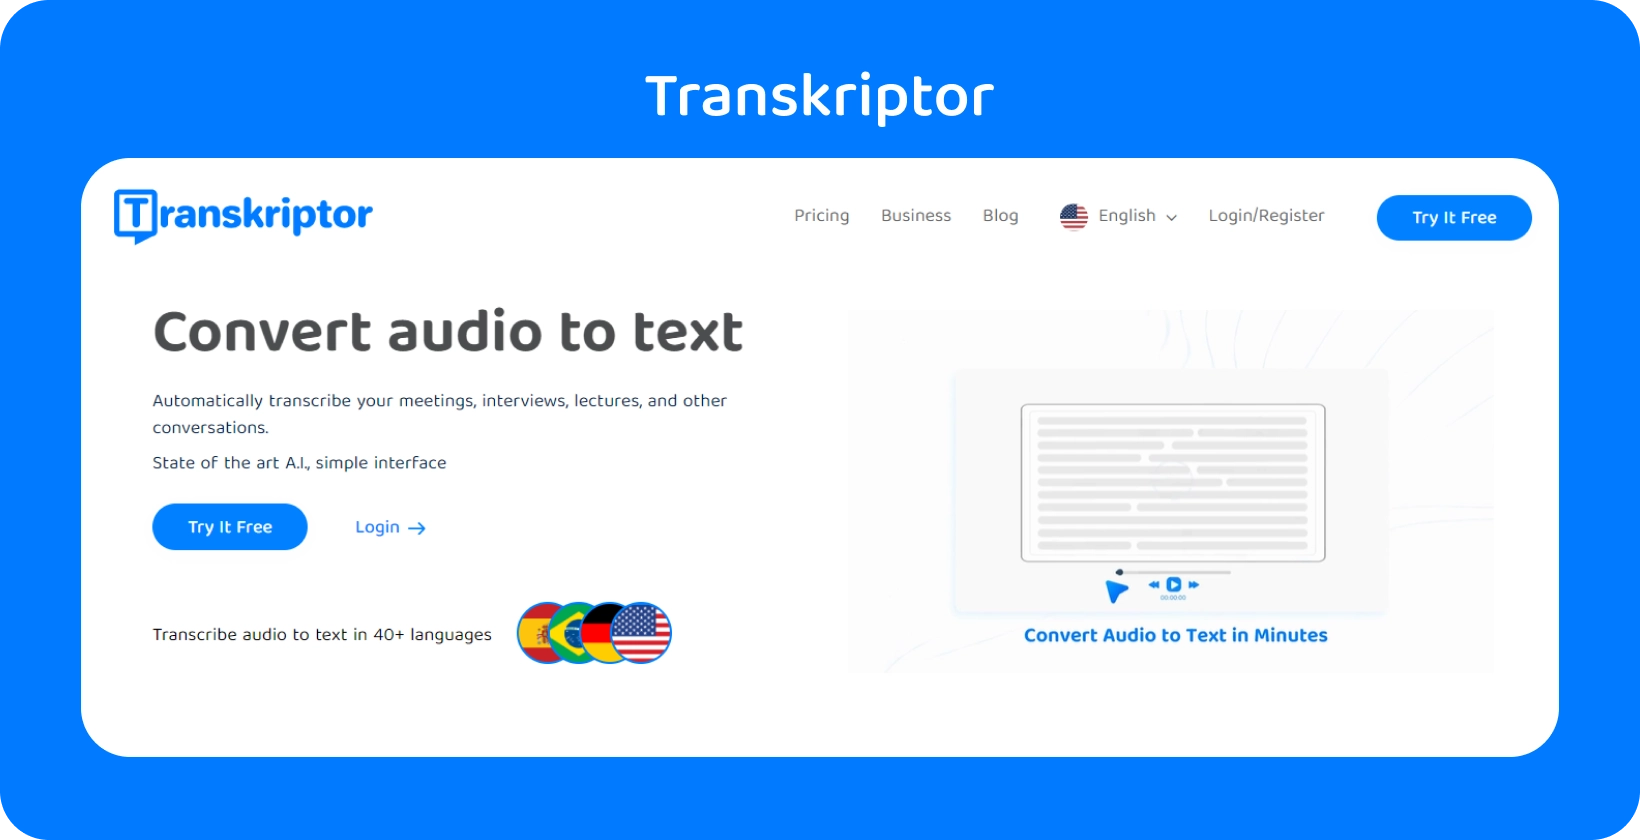 تعرض واجهة Transkriptor تحويل الصوت إلى نص ، وتدعم أكثر من 40 لغة لتنسيقات الملفات المتنوعة.
